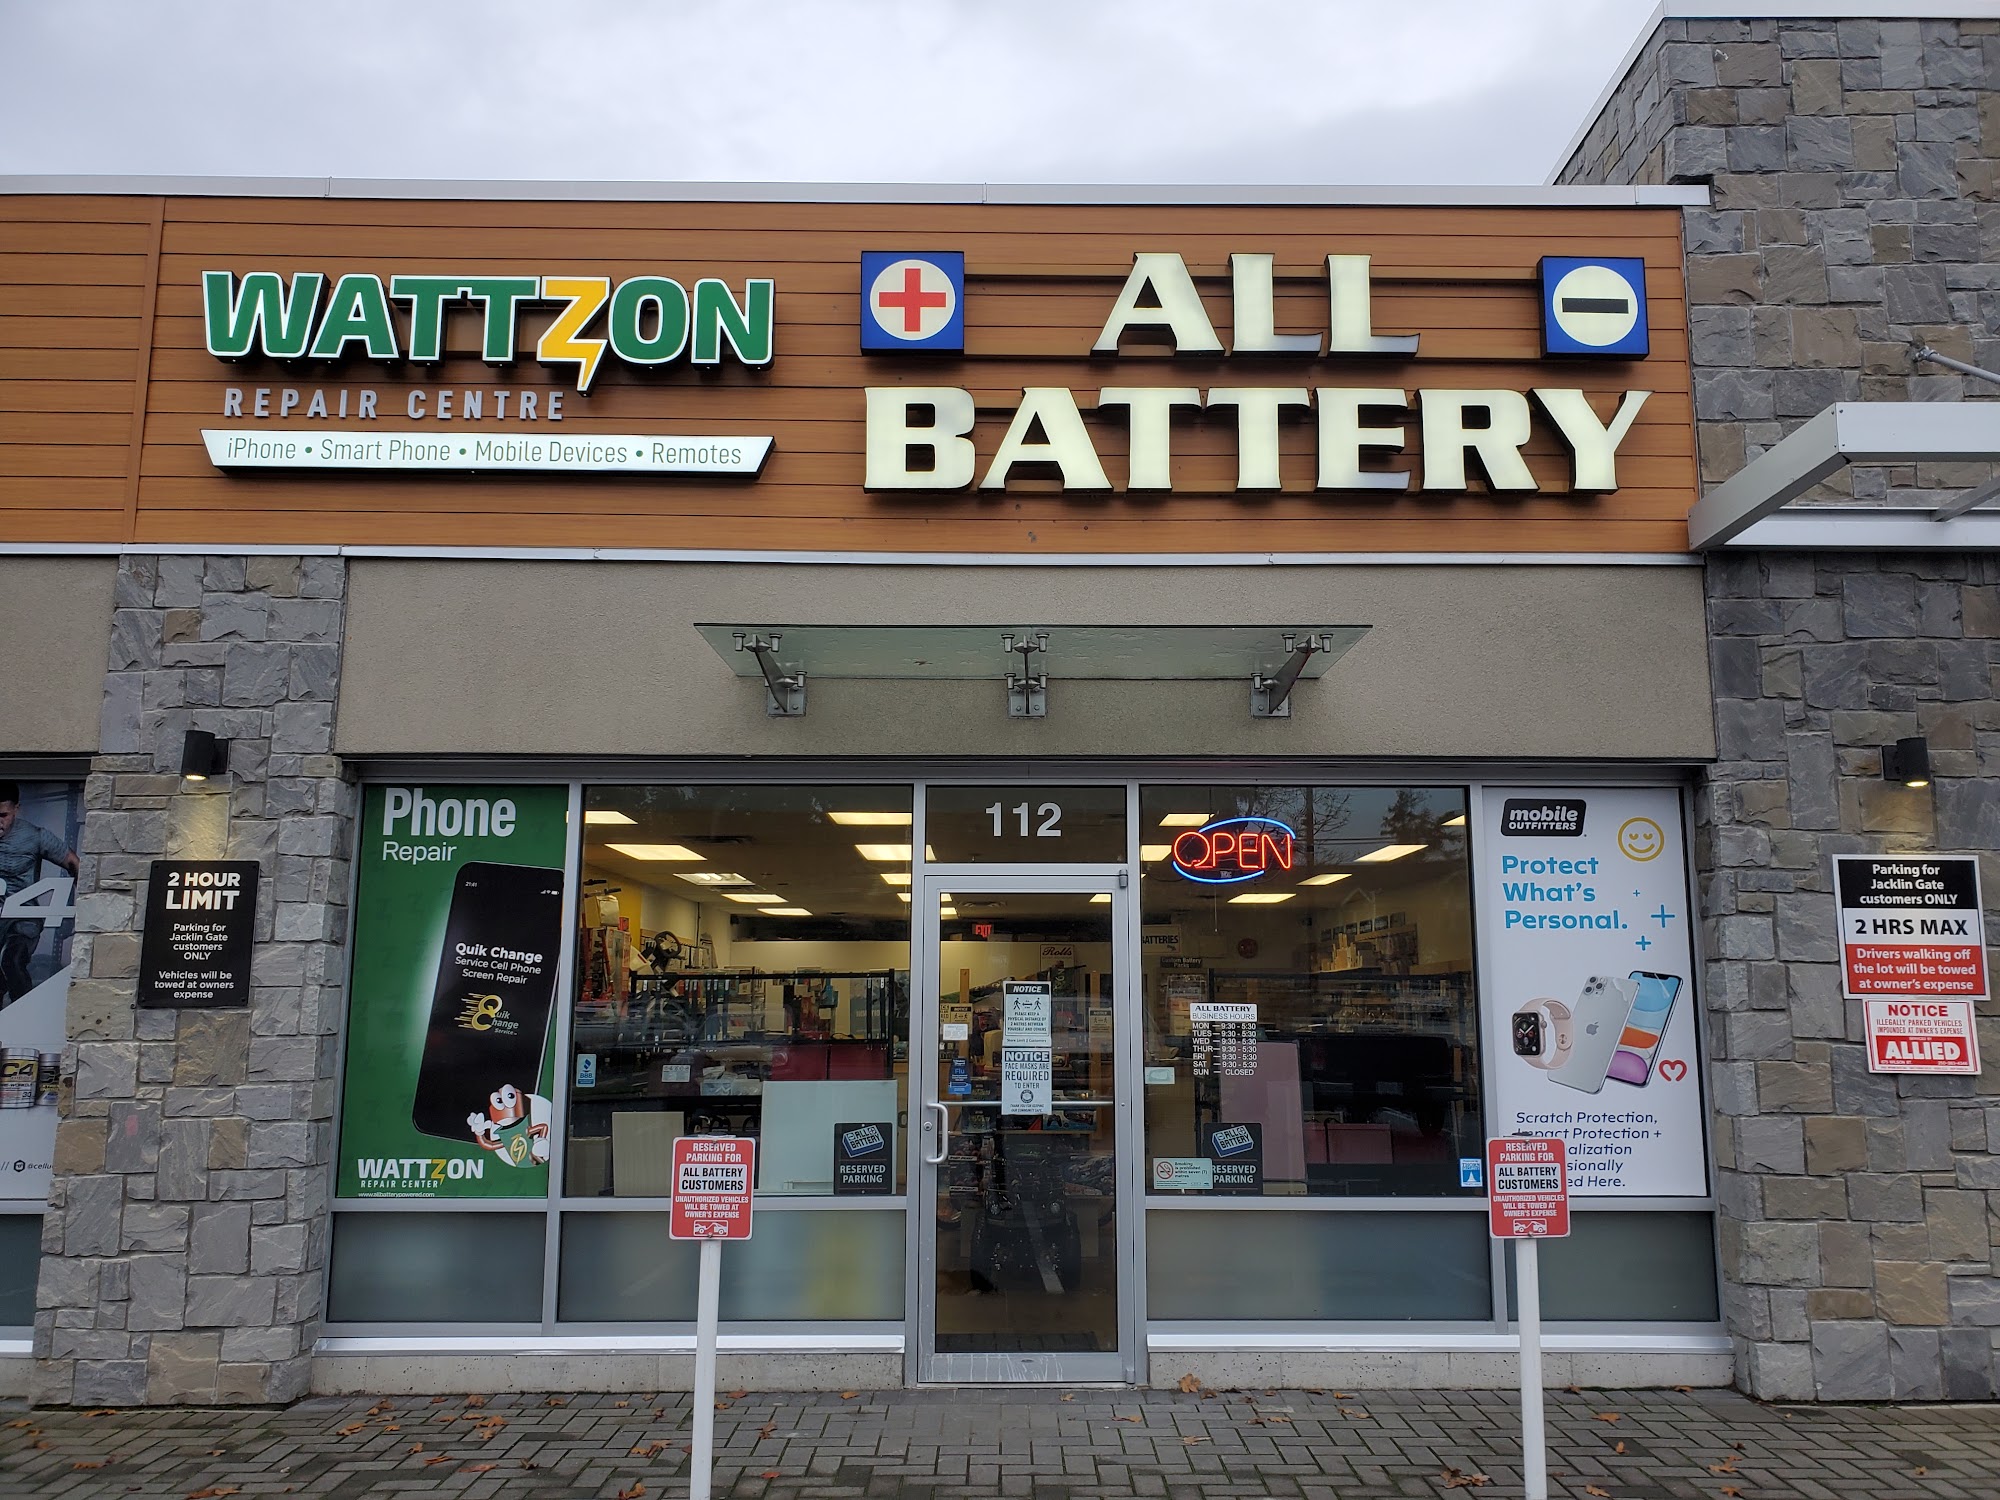 Wattzon Repair Centre - Inside All Battery Langford